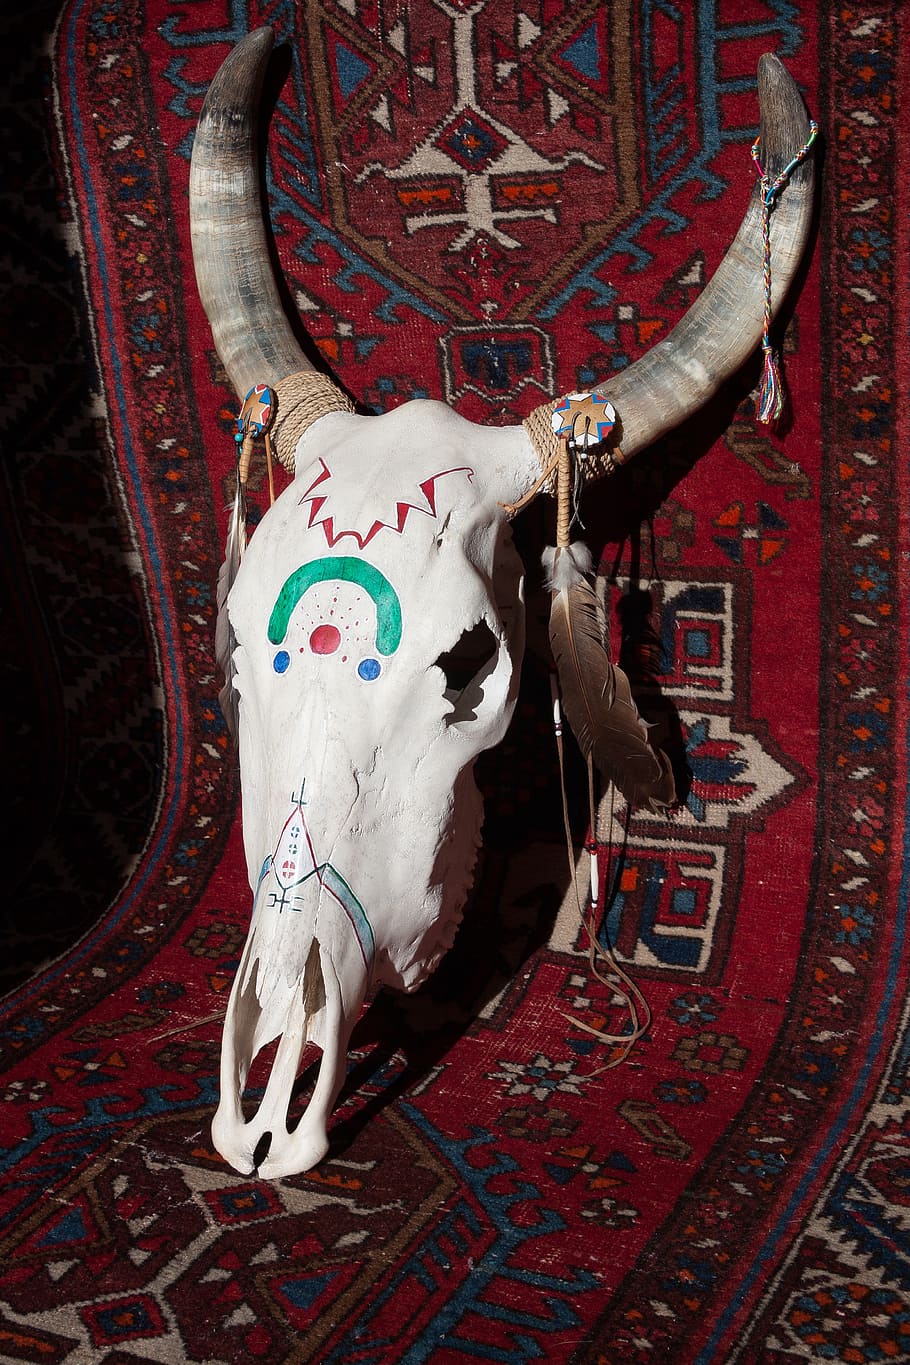 animal skull, area rug, skull, beef, painted, horn, bone, cattle skull, skeleton, indians